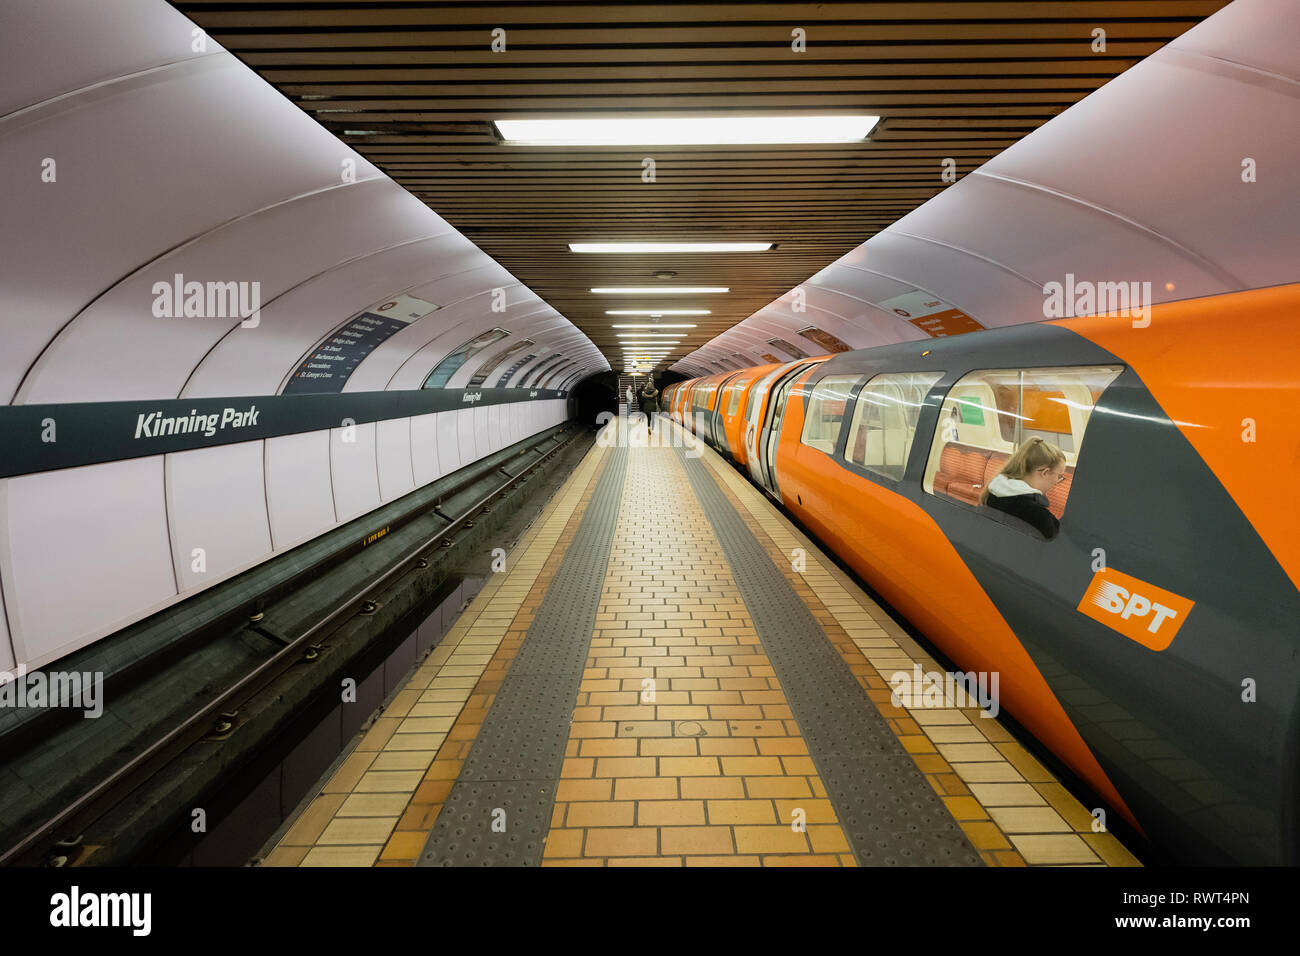 Anzeigen von Plattform- und Zug im Bahnhof der U-Bahn in Glasgow Glasgow, Schottland Großbritannien Stockfoto